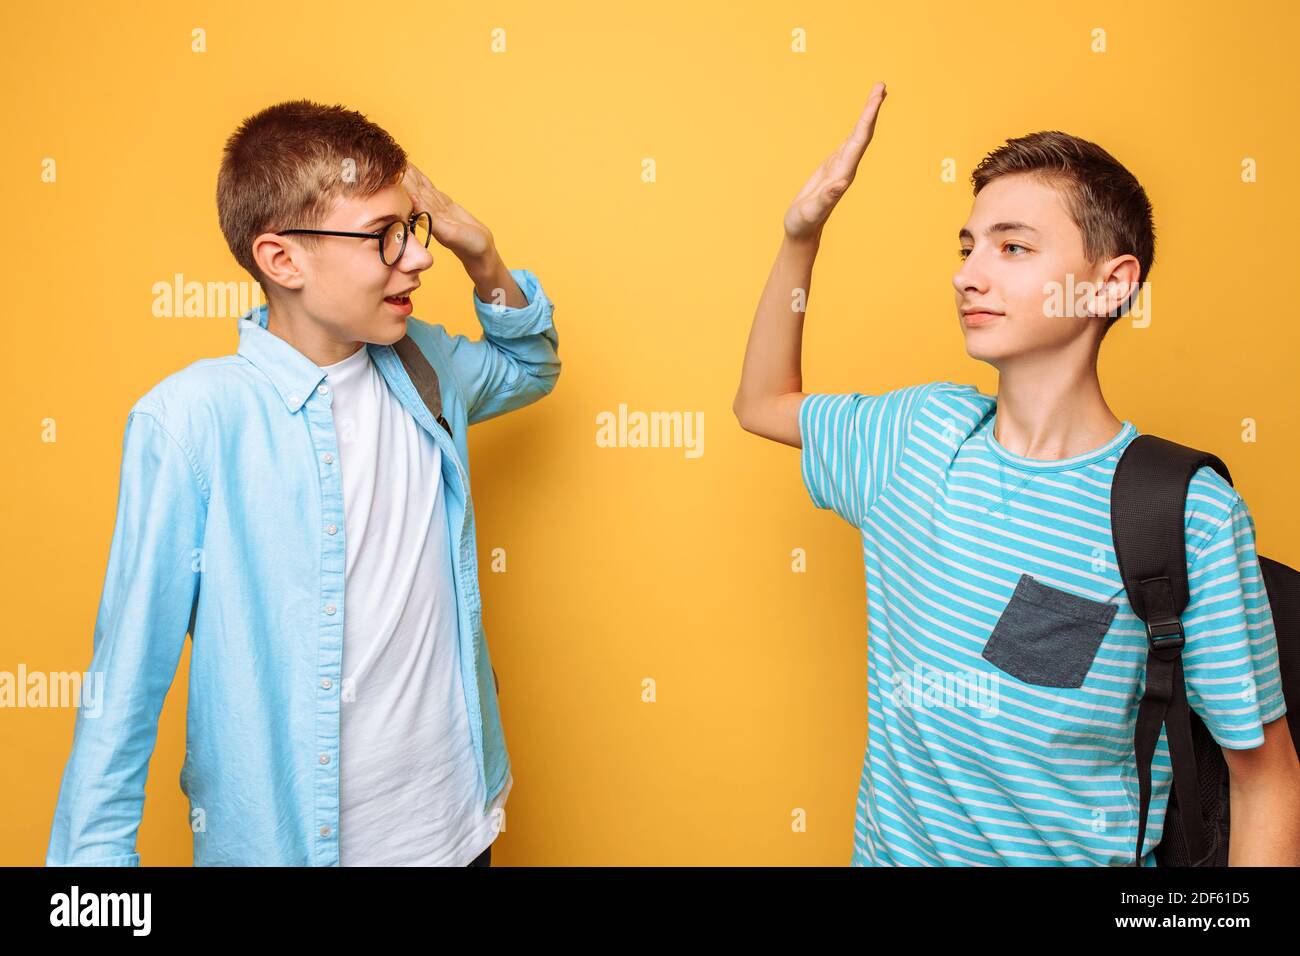 Dos adolescentes con estilo, chicos se saludan unos a otros, sobre un fondo amarillo Foto de stock